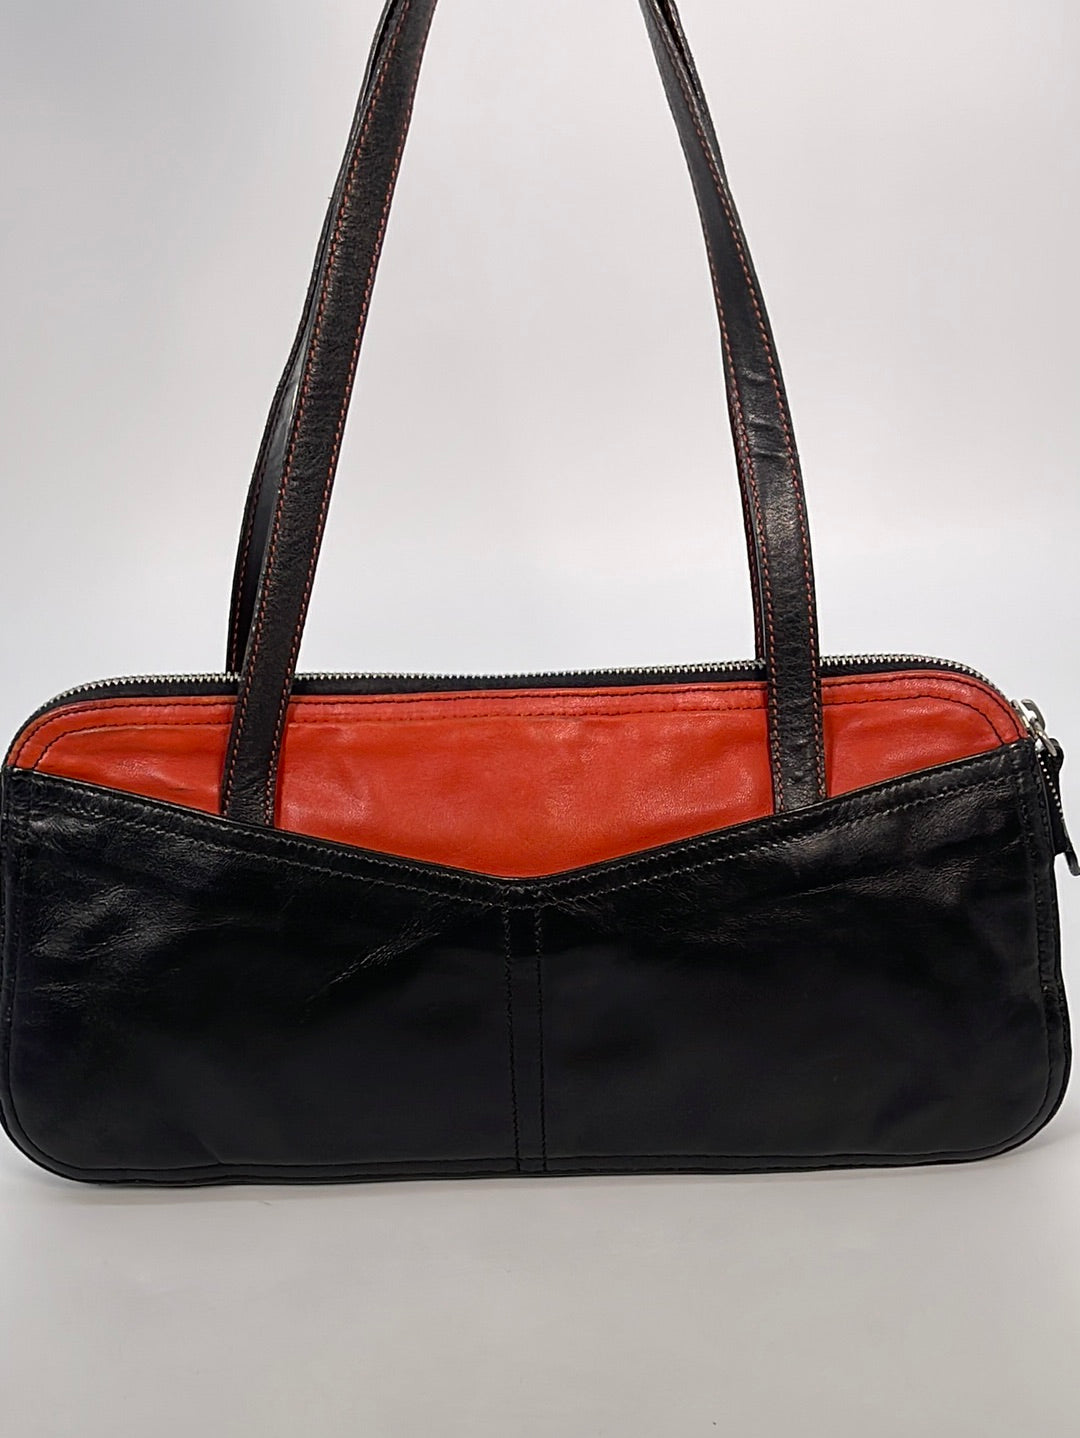 Prada Saffiano Red Leather Shoulder Bag ()